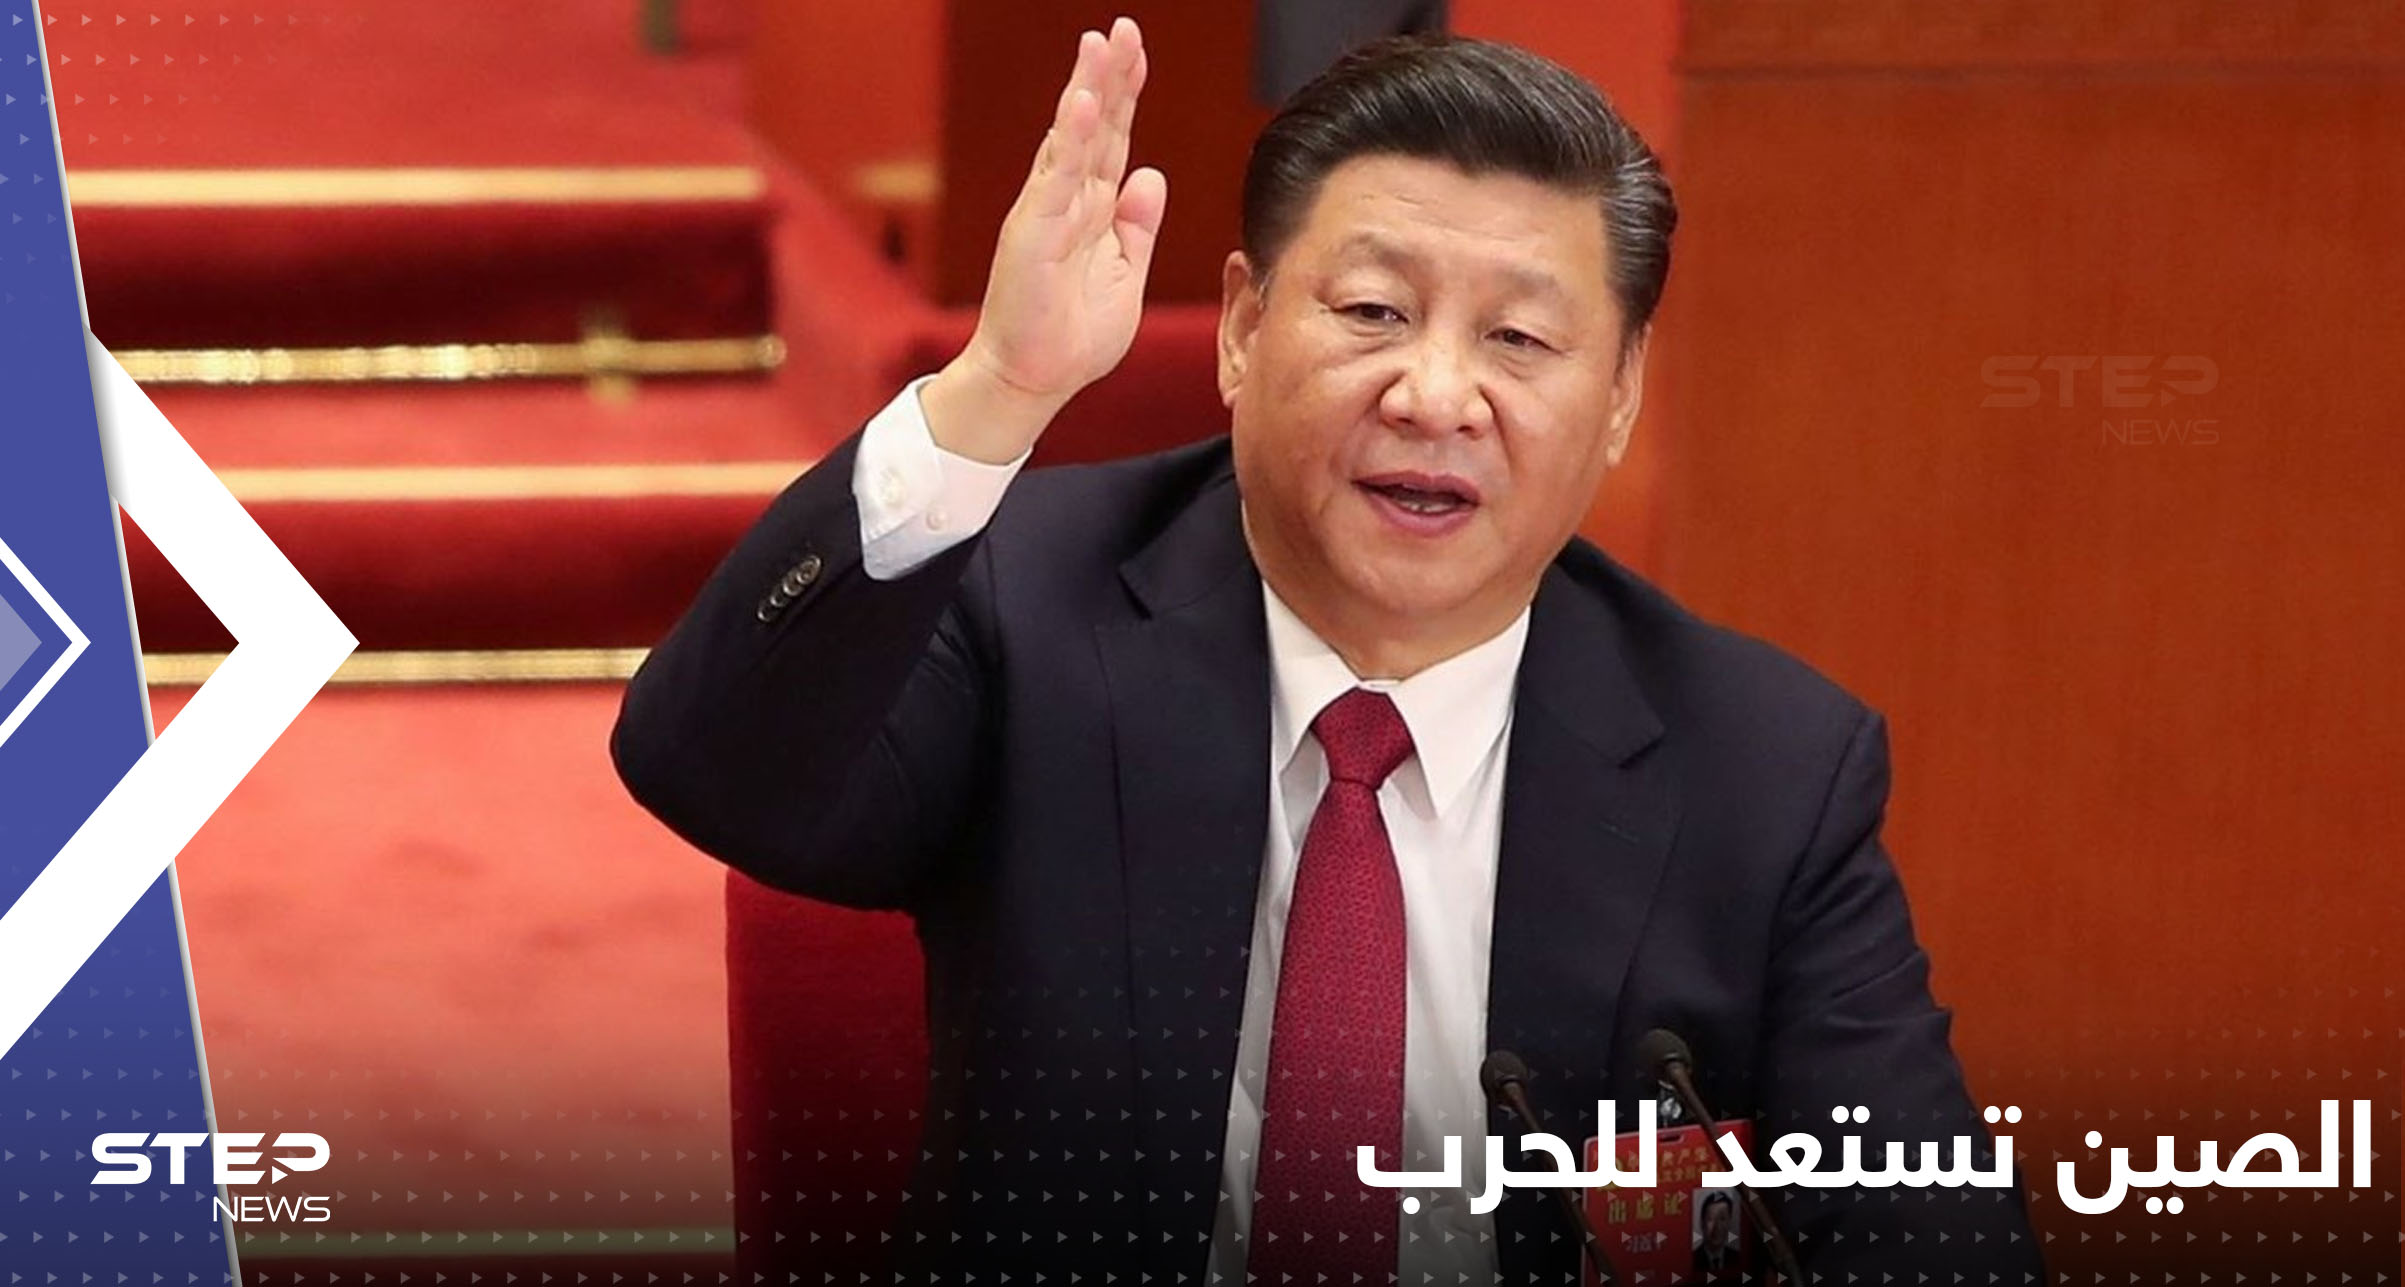 إعلان الاستعداد للحرب يصدر من الرئيس الصيني وتايوان تتحضر لــ "غزو مفاجئ"